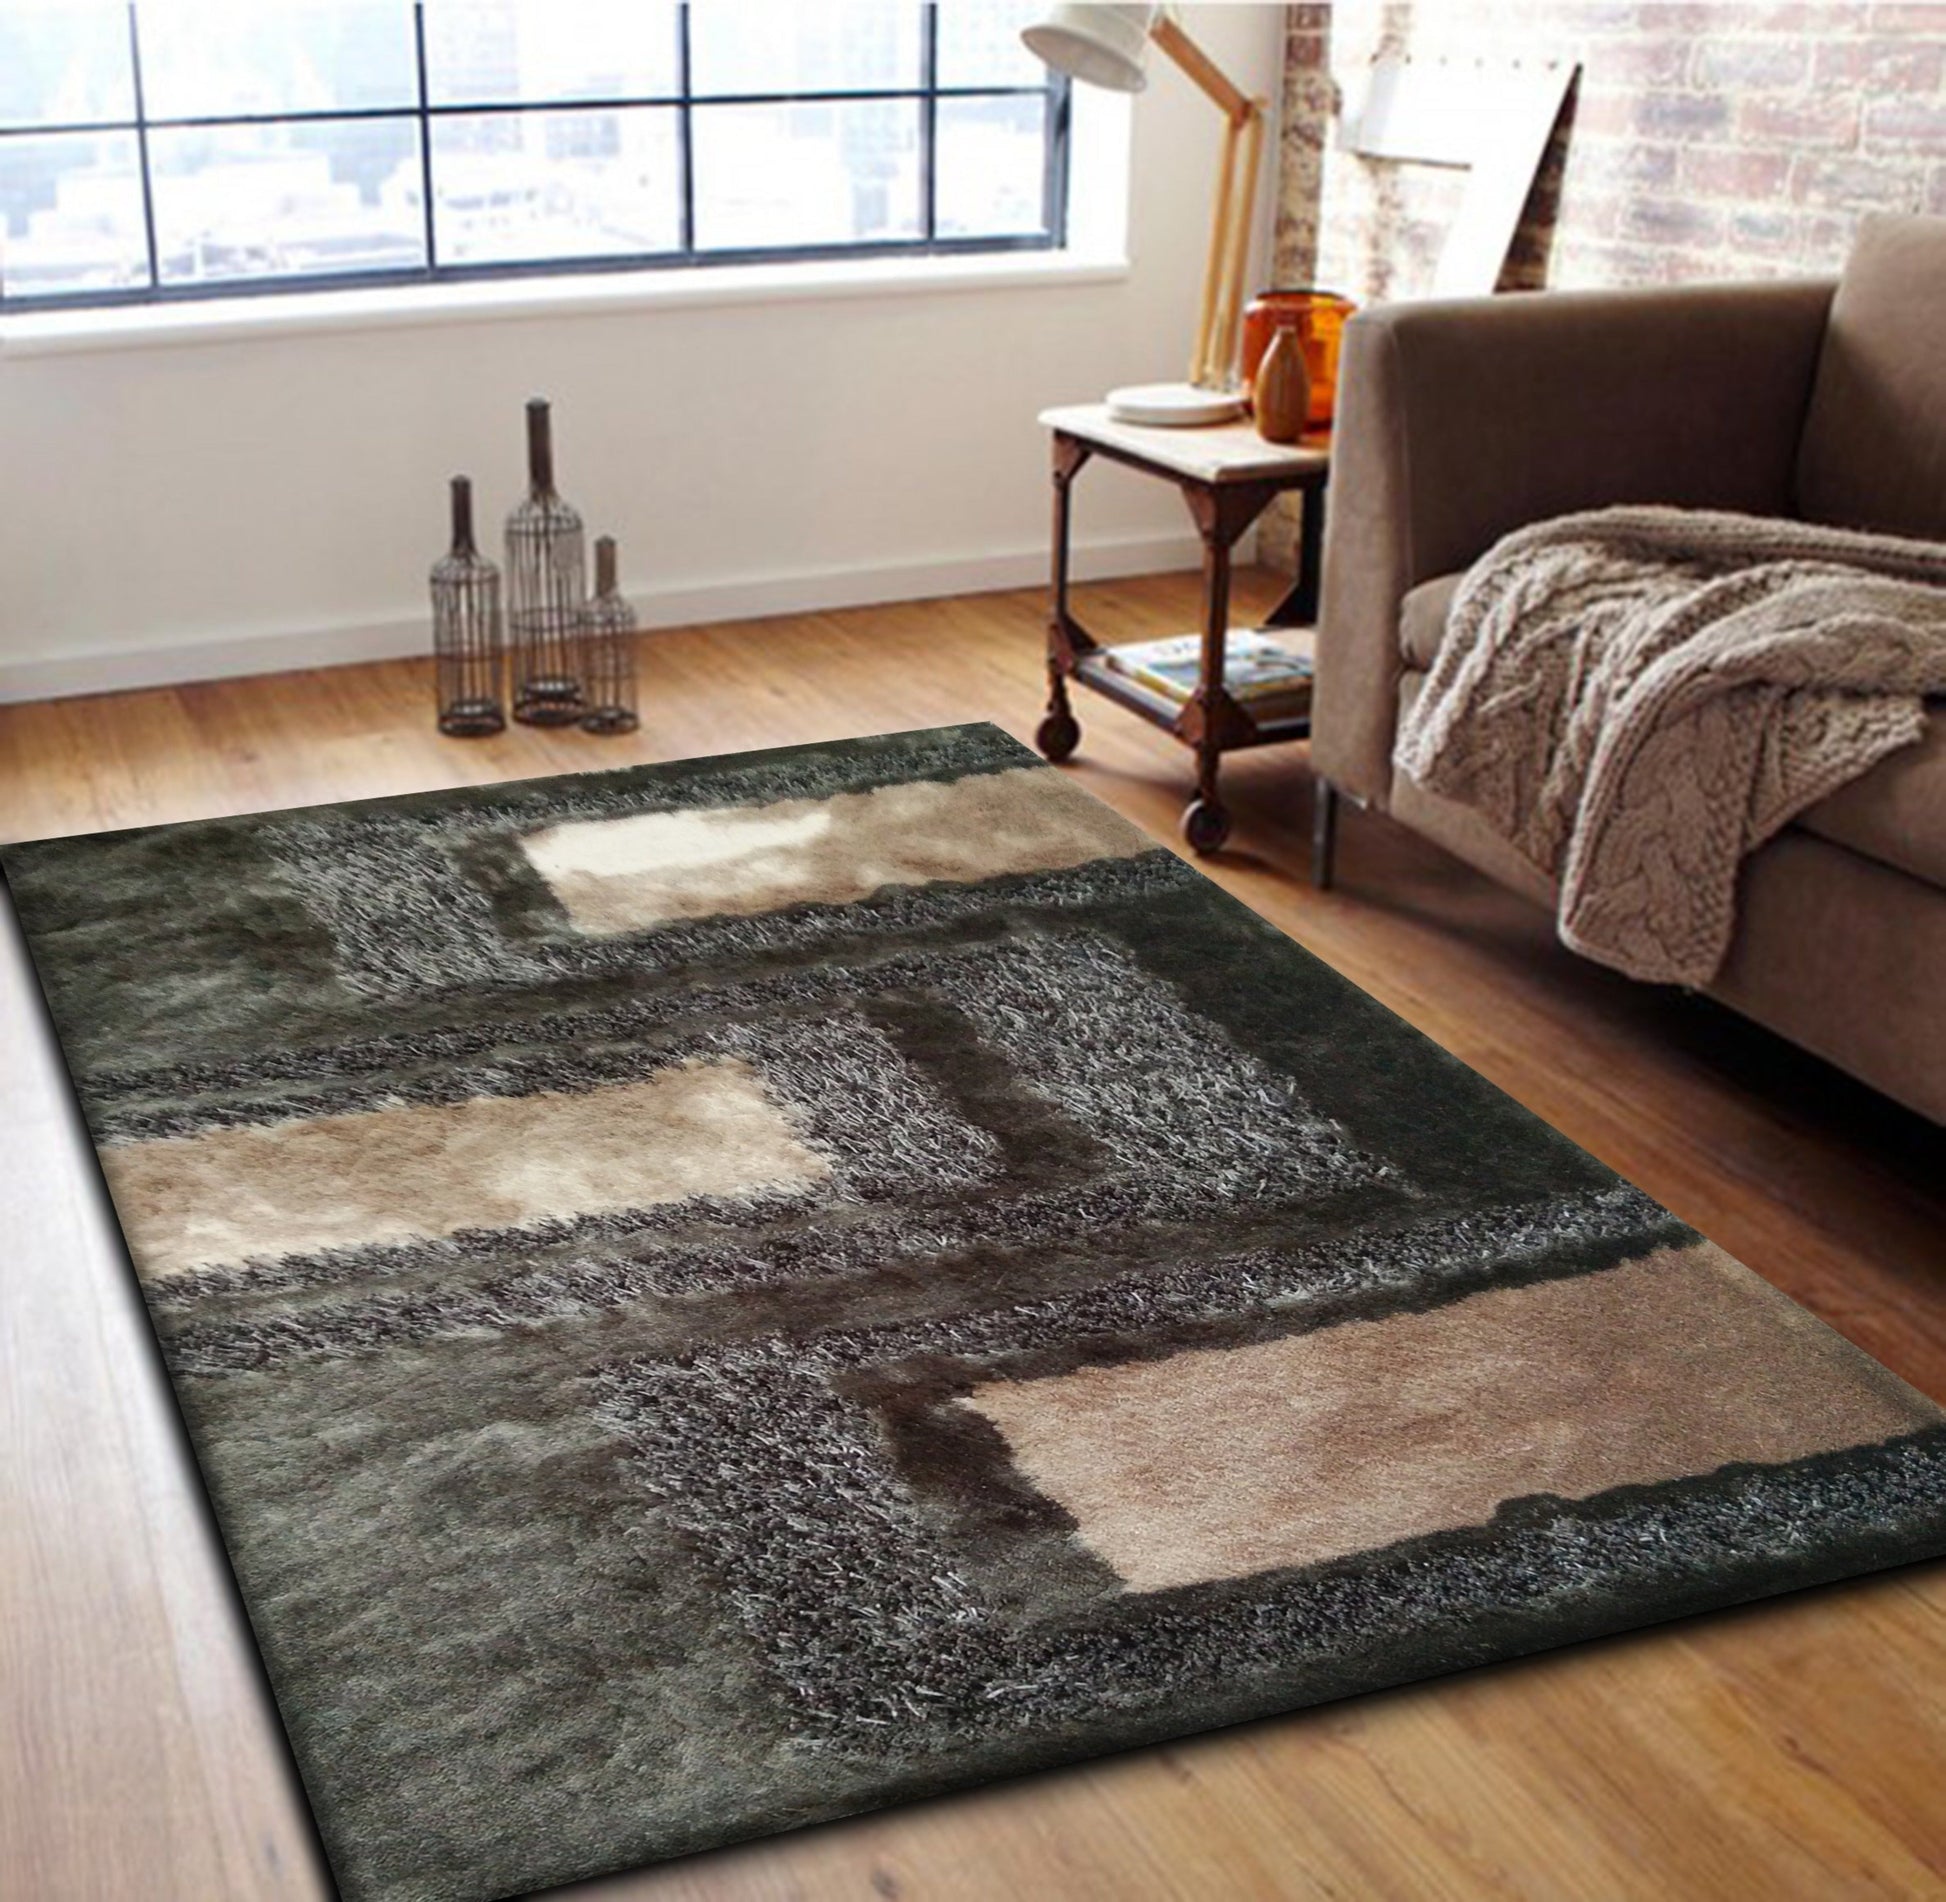 Soft Plush Fluffy Multi-textural Design Earth Tone Shag Area Rug/Carpet